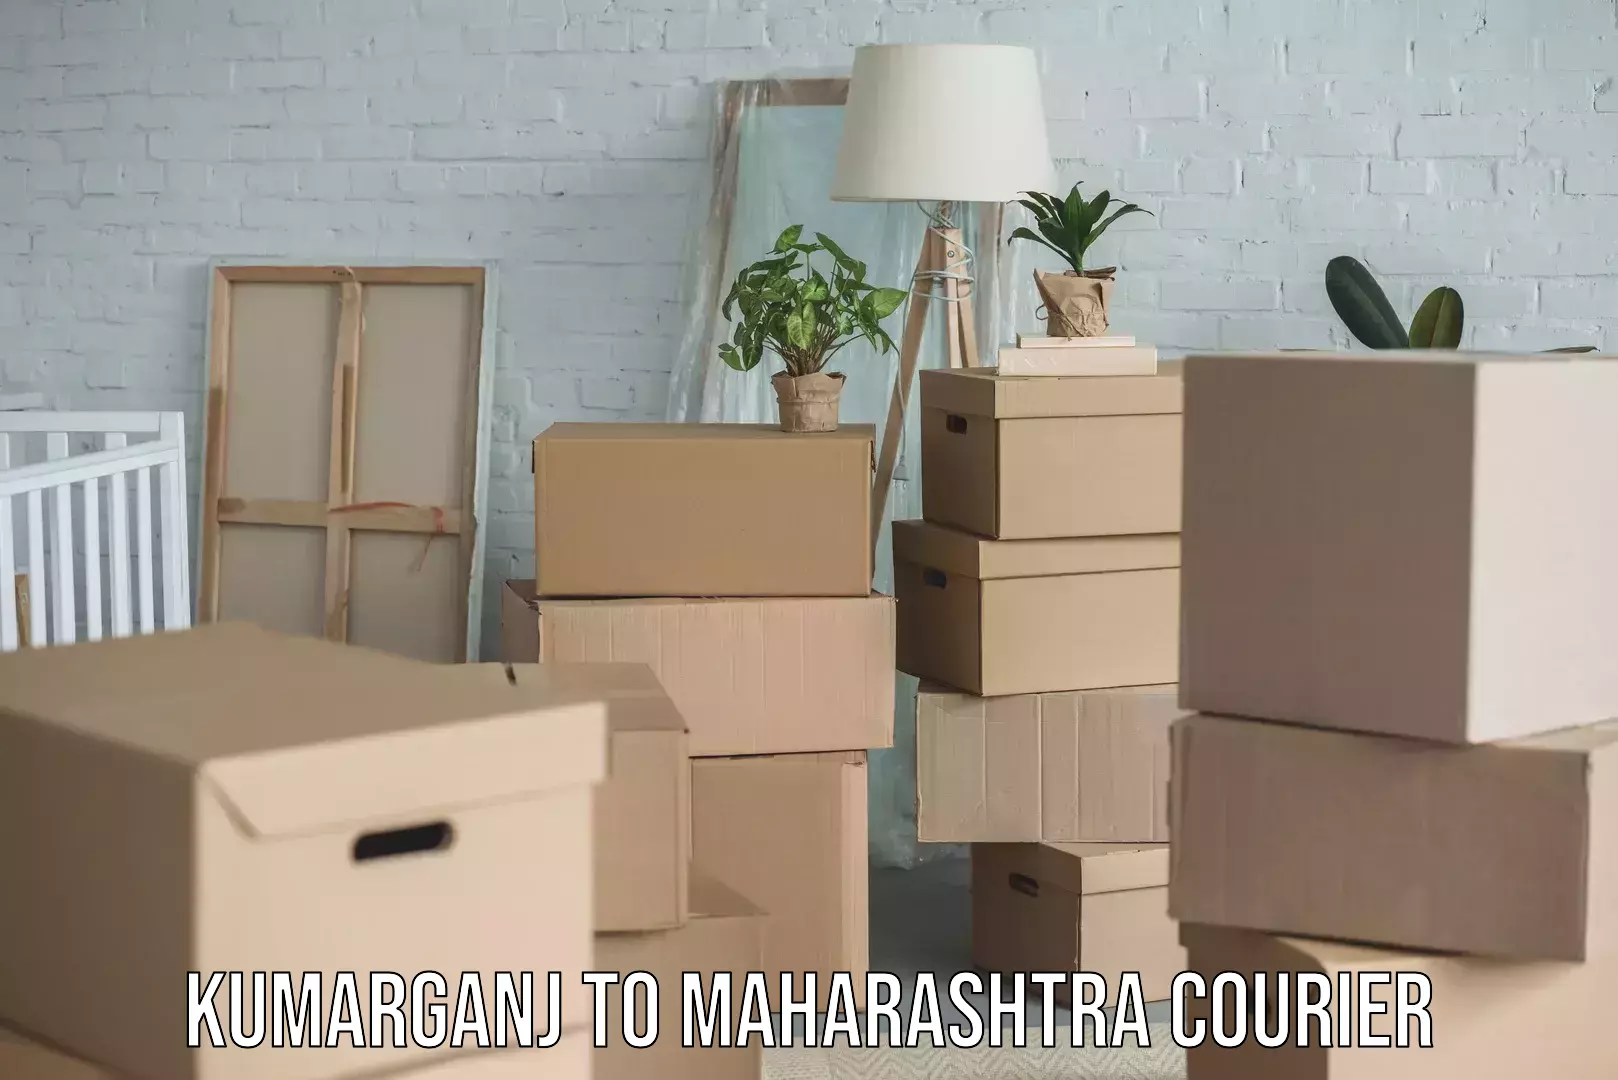 Home goods moving company Kumarganj to Maharashtra